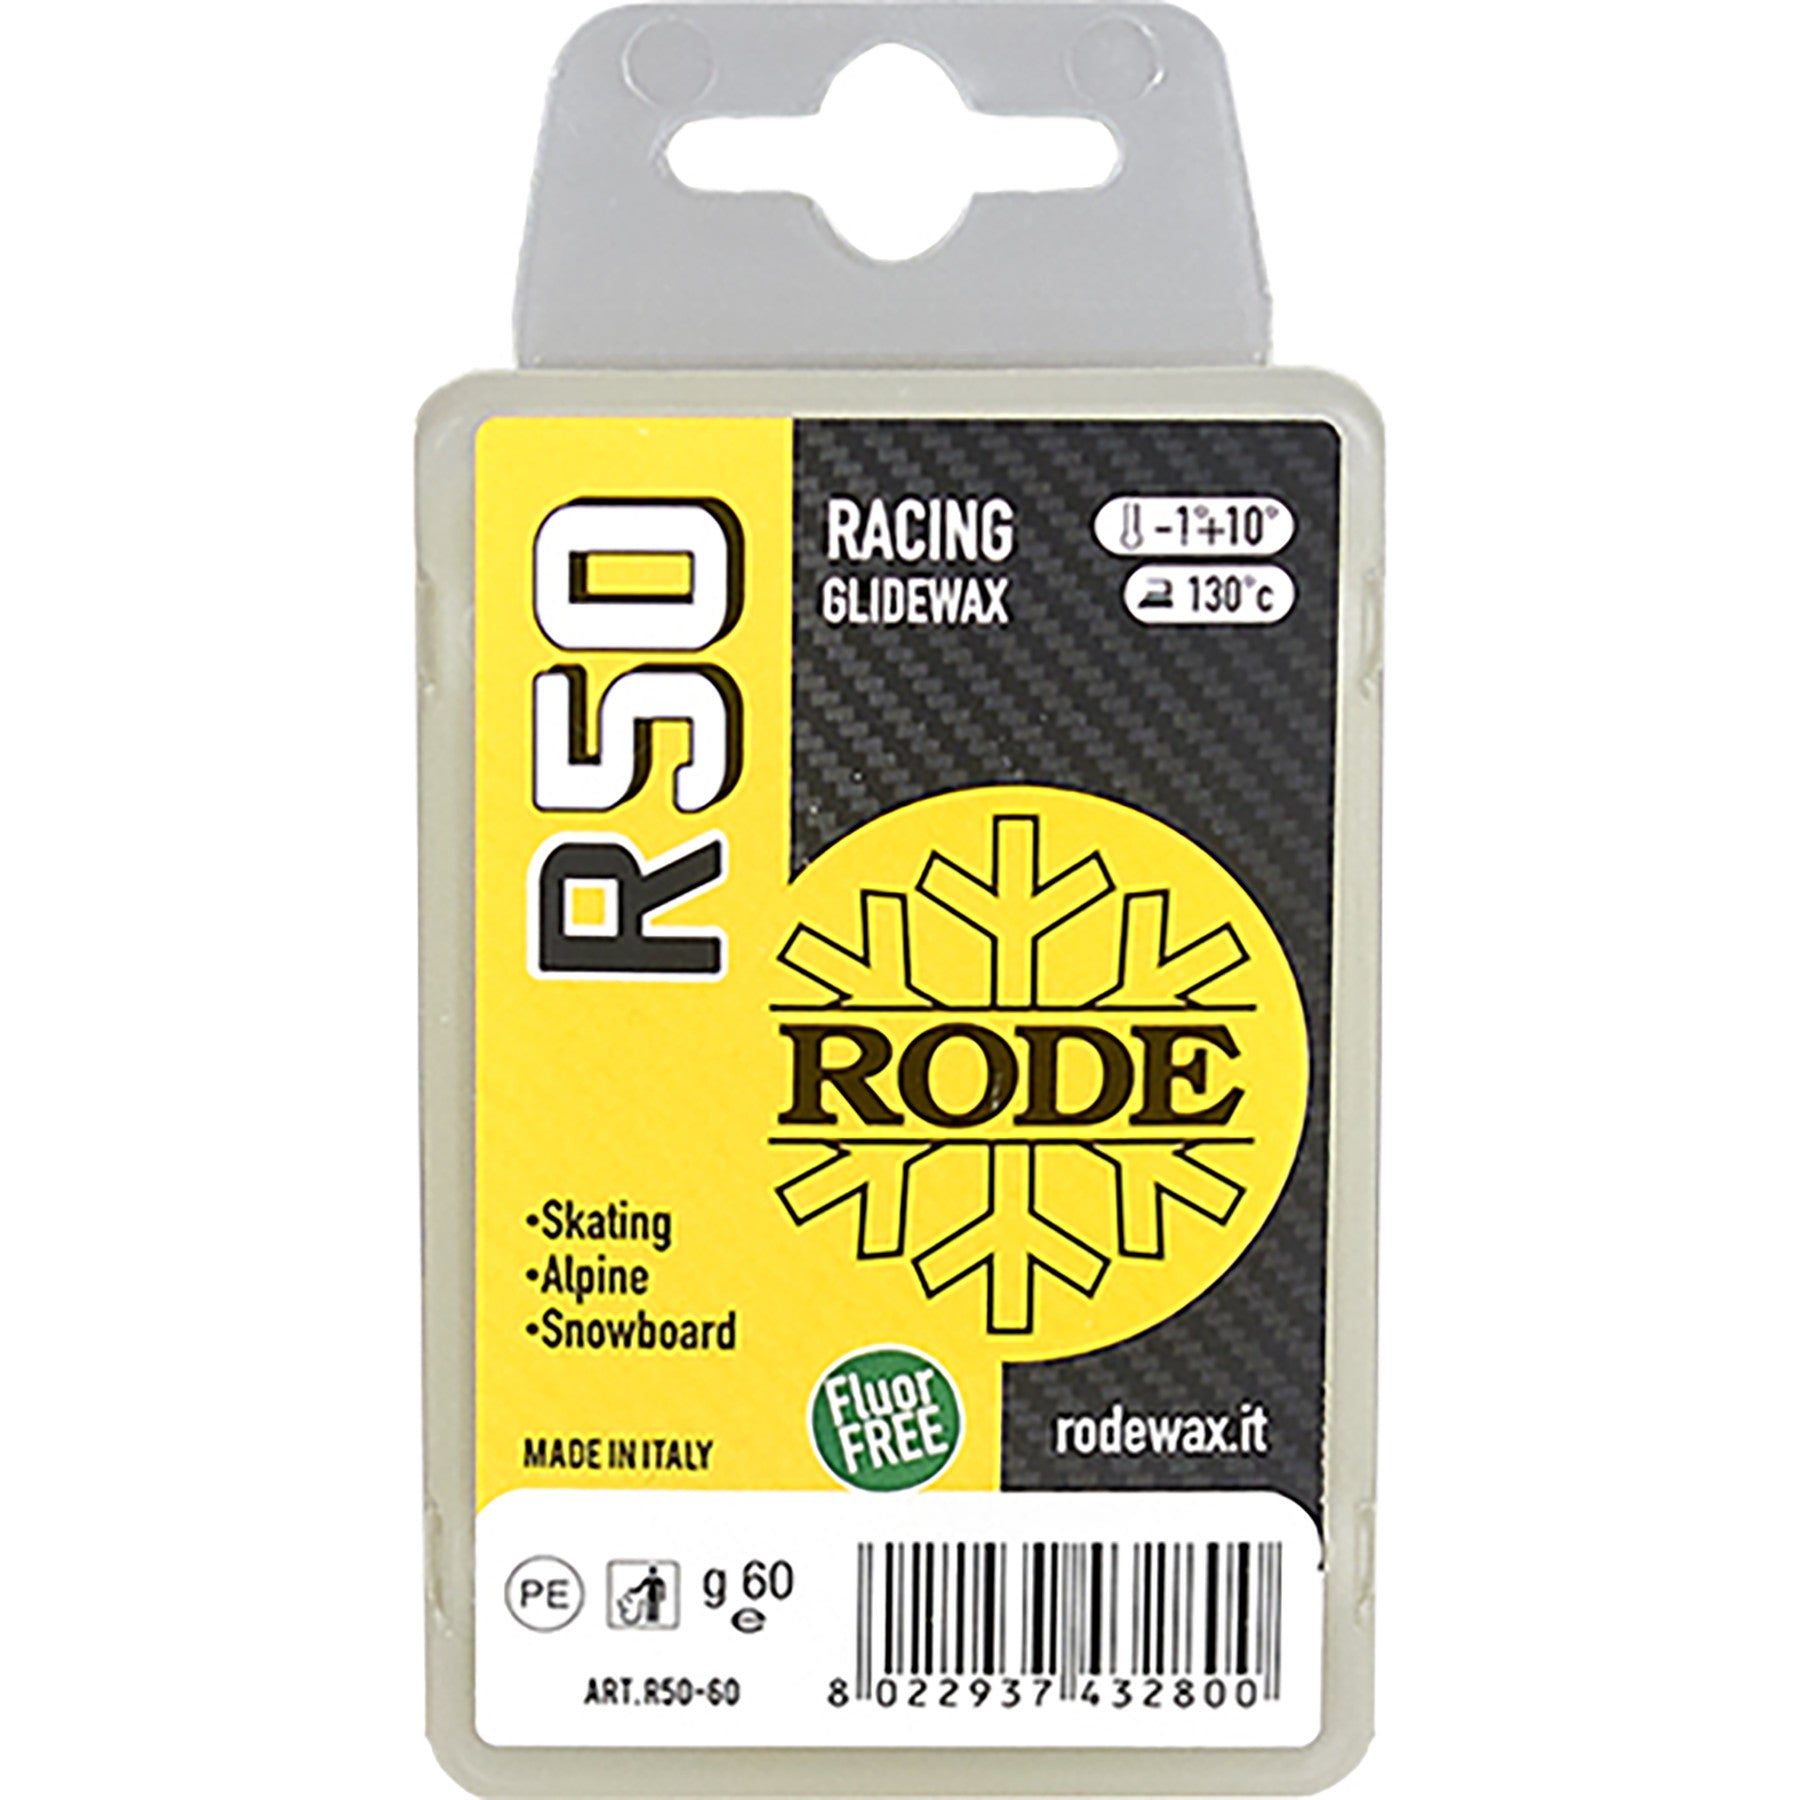 Rode Racing Glide Wax 60g